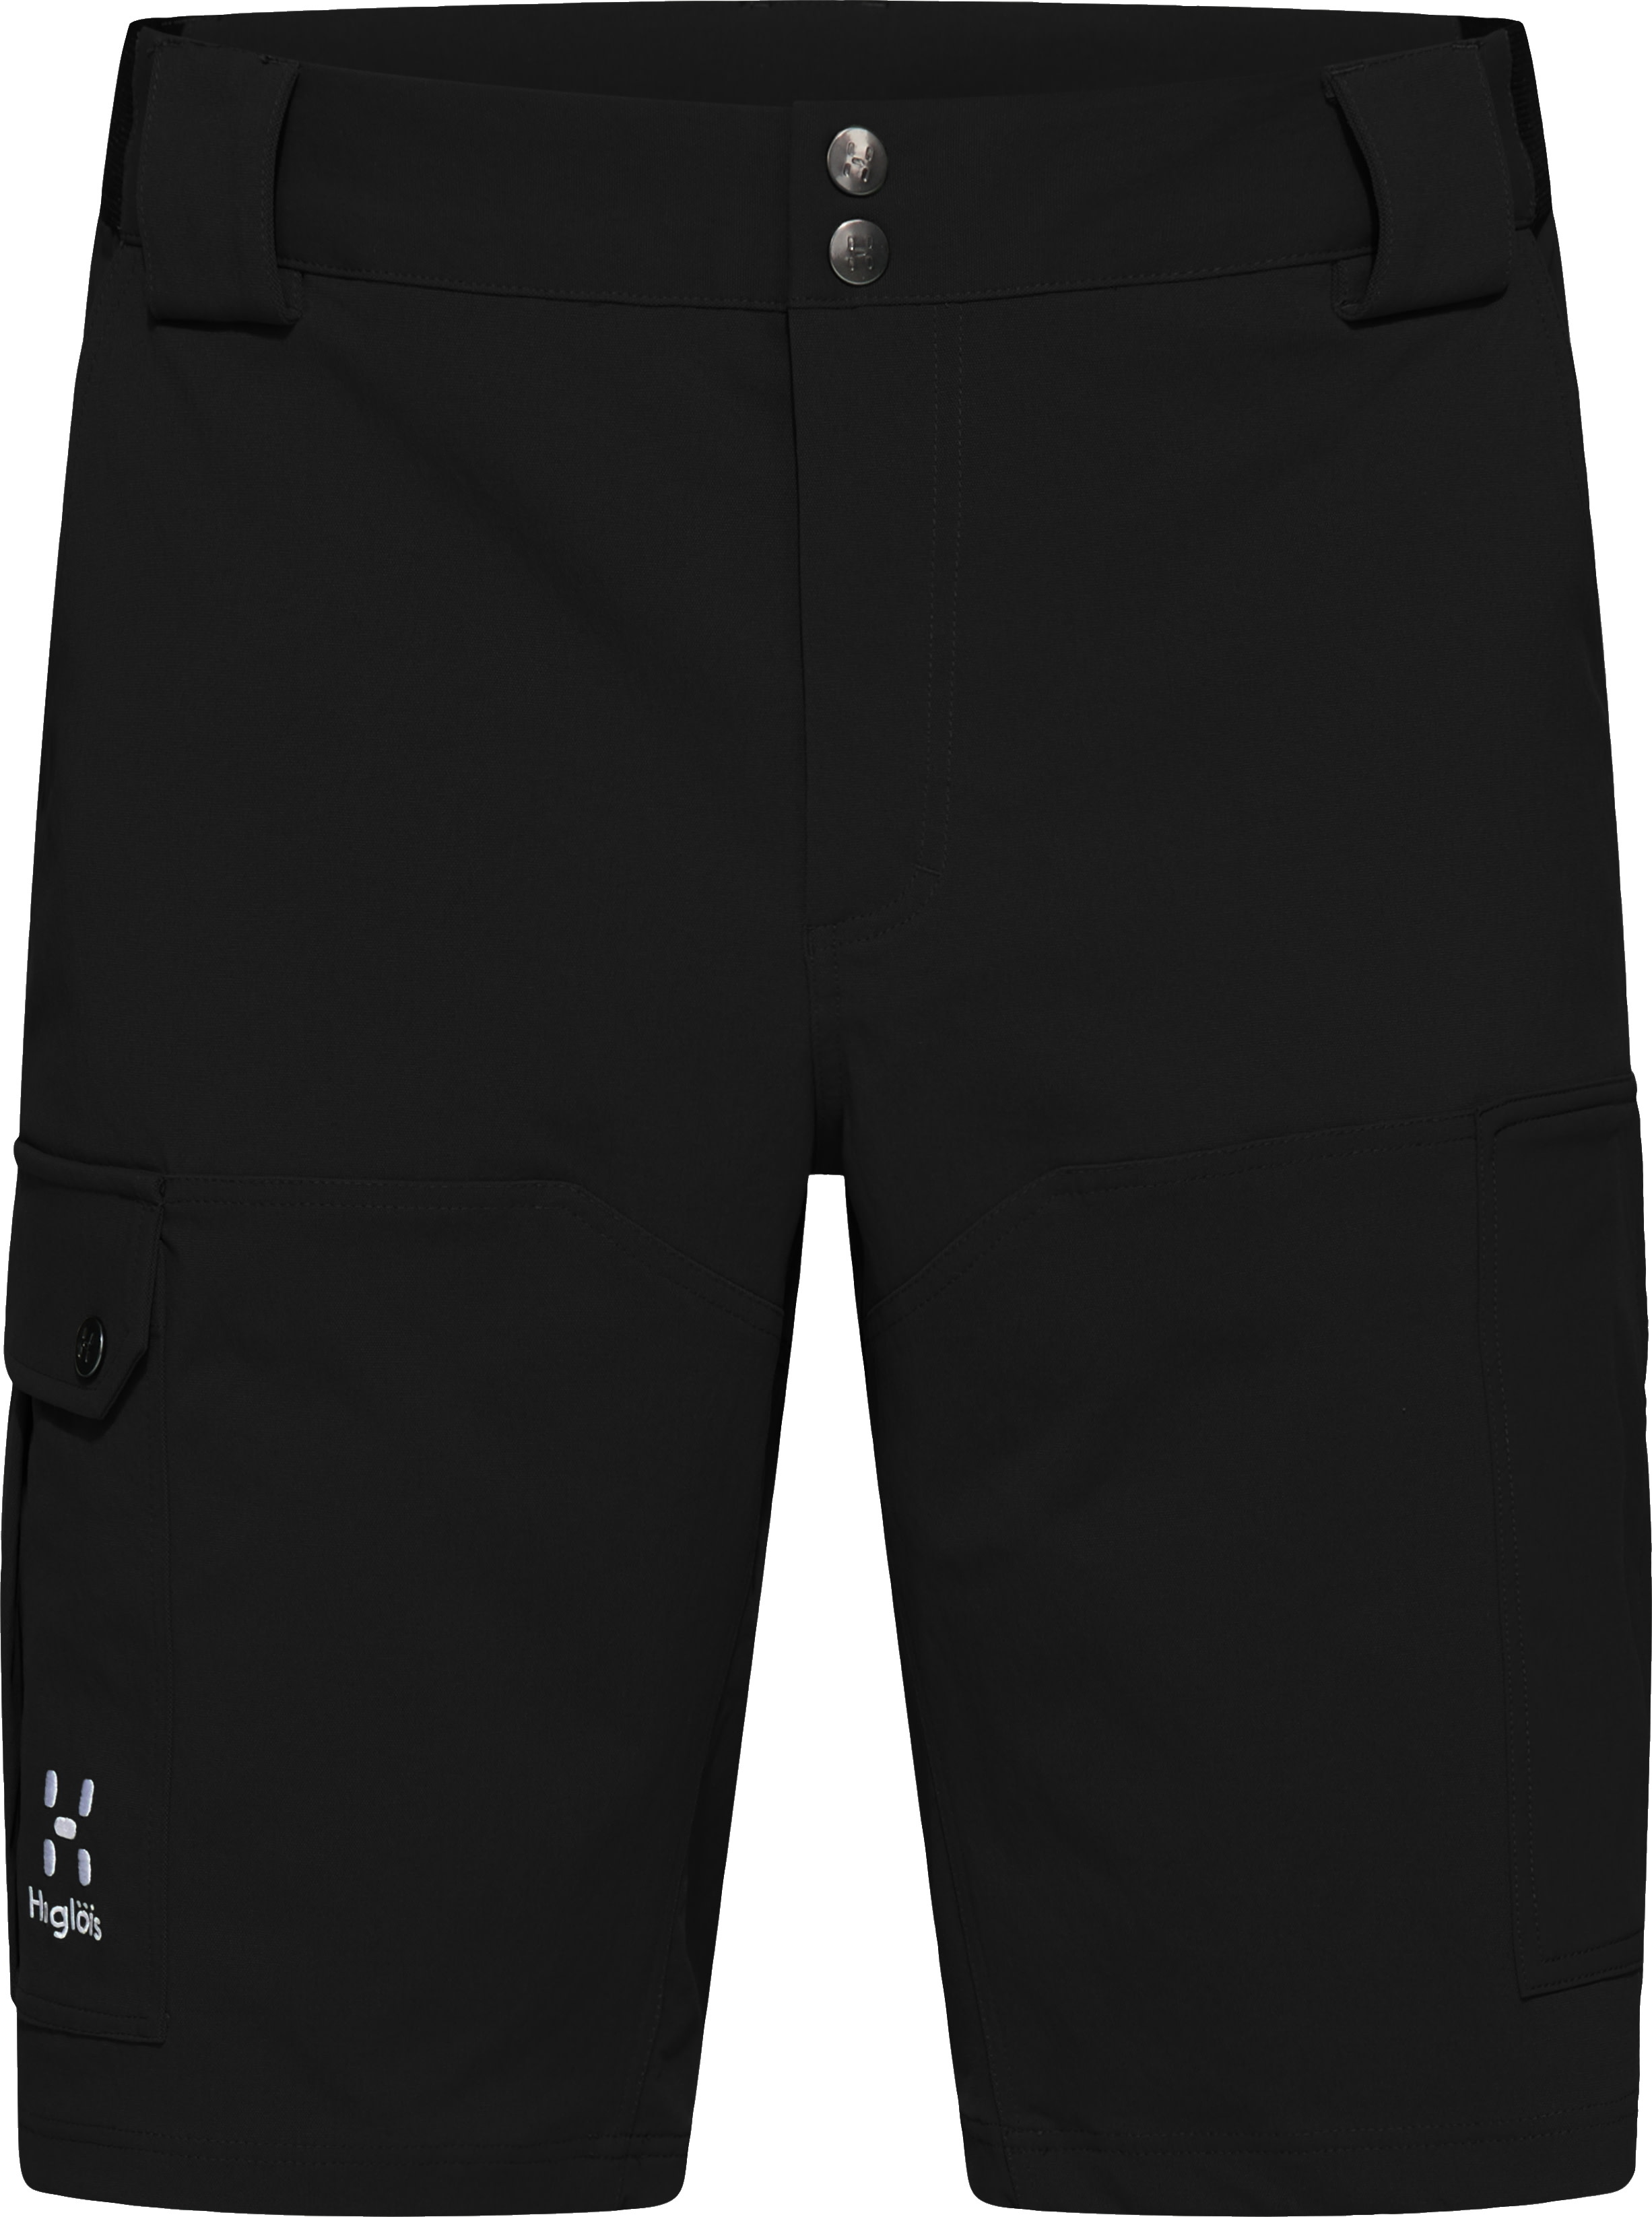 Haglöfs Men’s Rugged Standard Shorts True Black